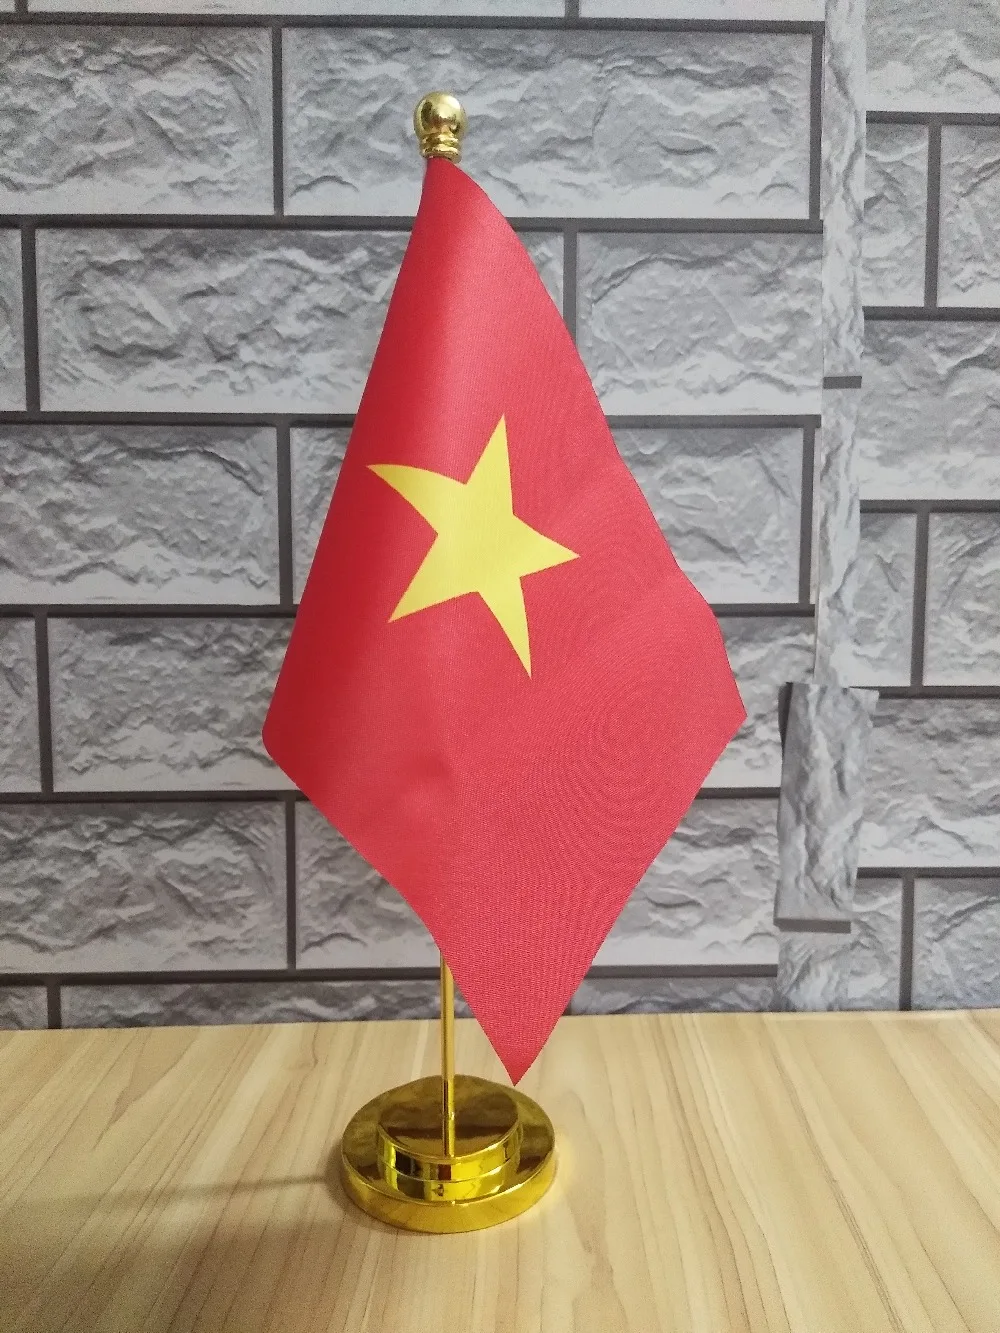 Вьетнамский настольный флаг баннер и золотой флагшток/Серебряный флагшток для украшения/подписи/переговоров 14*21 см, 011